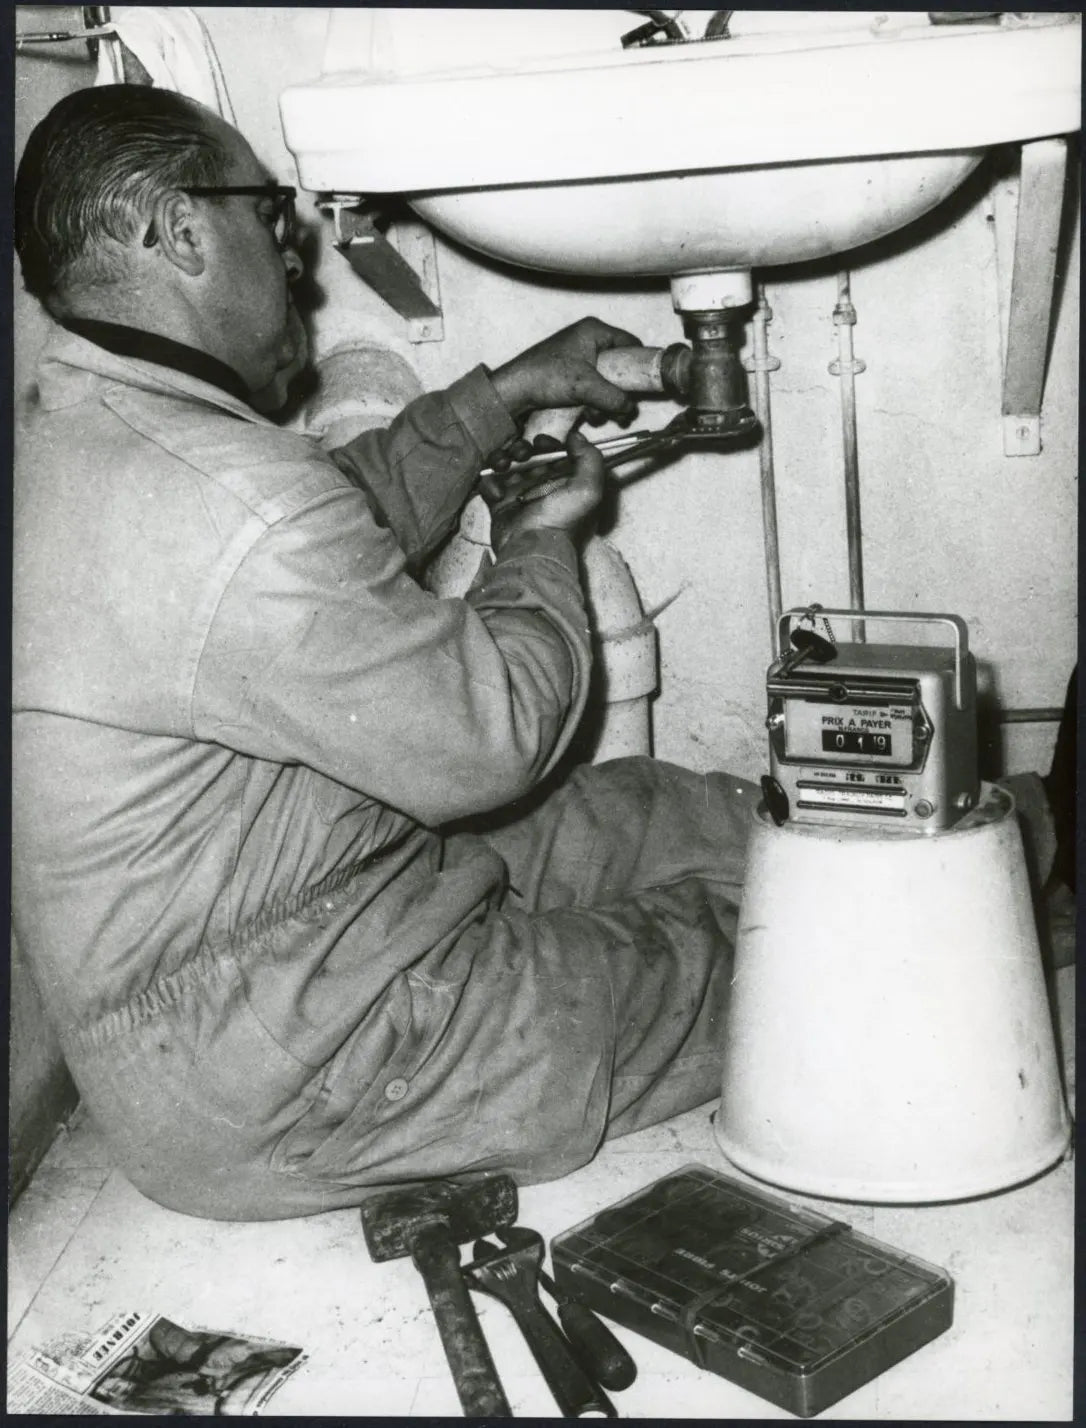 Idraulico con contatore anni 60 Ft 3194 - Stampa 24x18 cm - Farabola Stampa ai sali d'argento